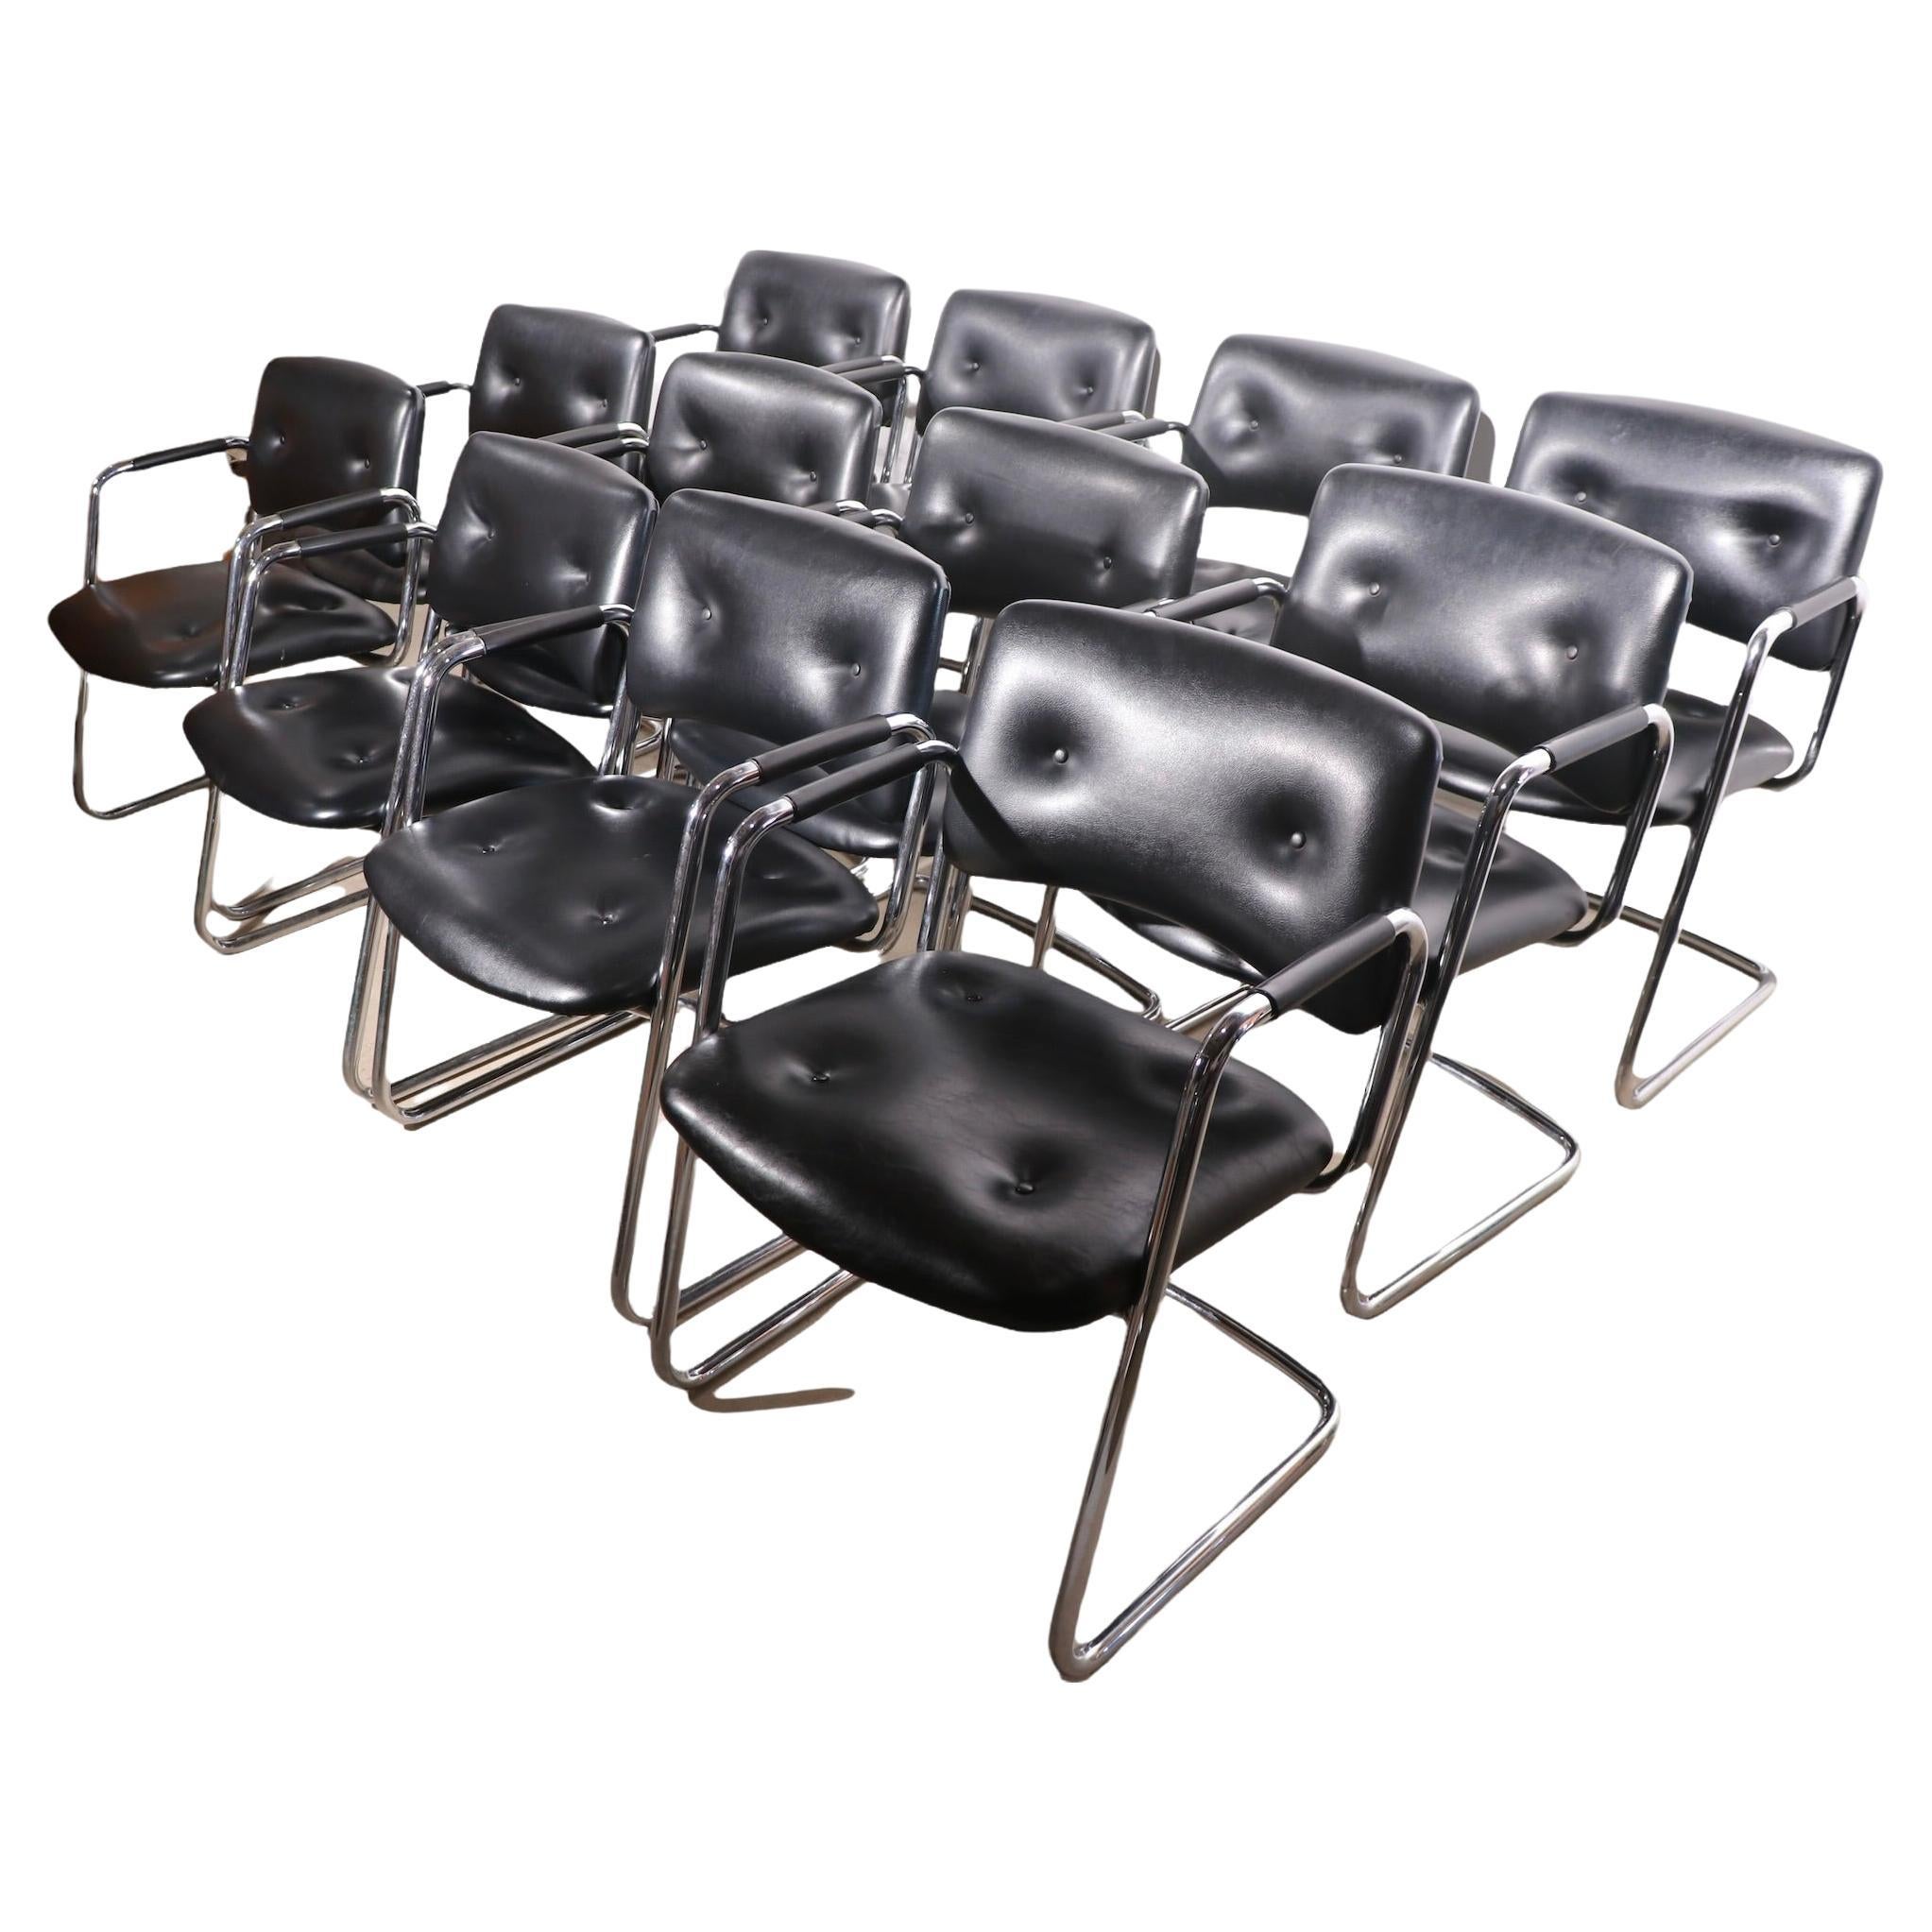 Ensemble de 12 fauteuils en porte-à-faux Steelcase chromés et noirs, modèle 421-482 en vente